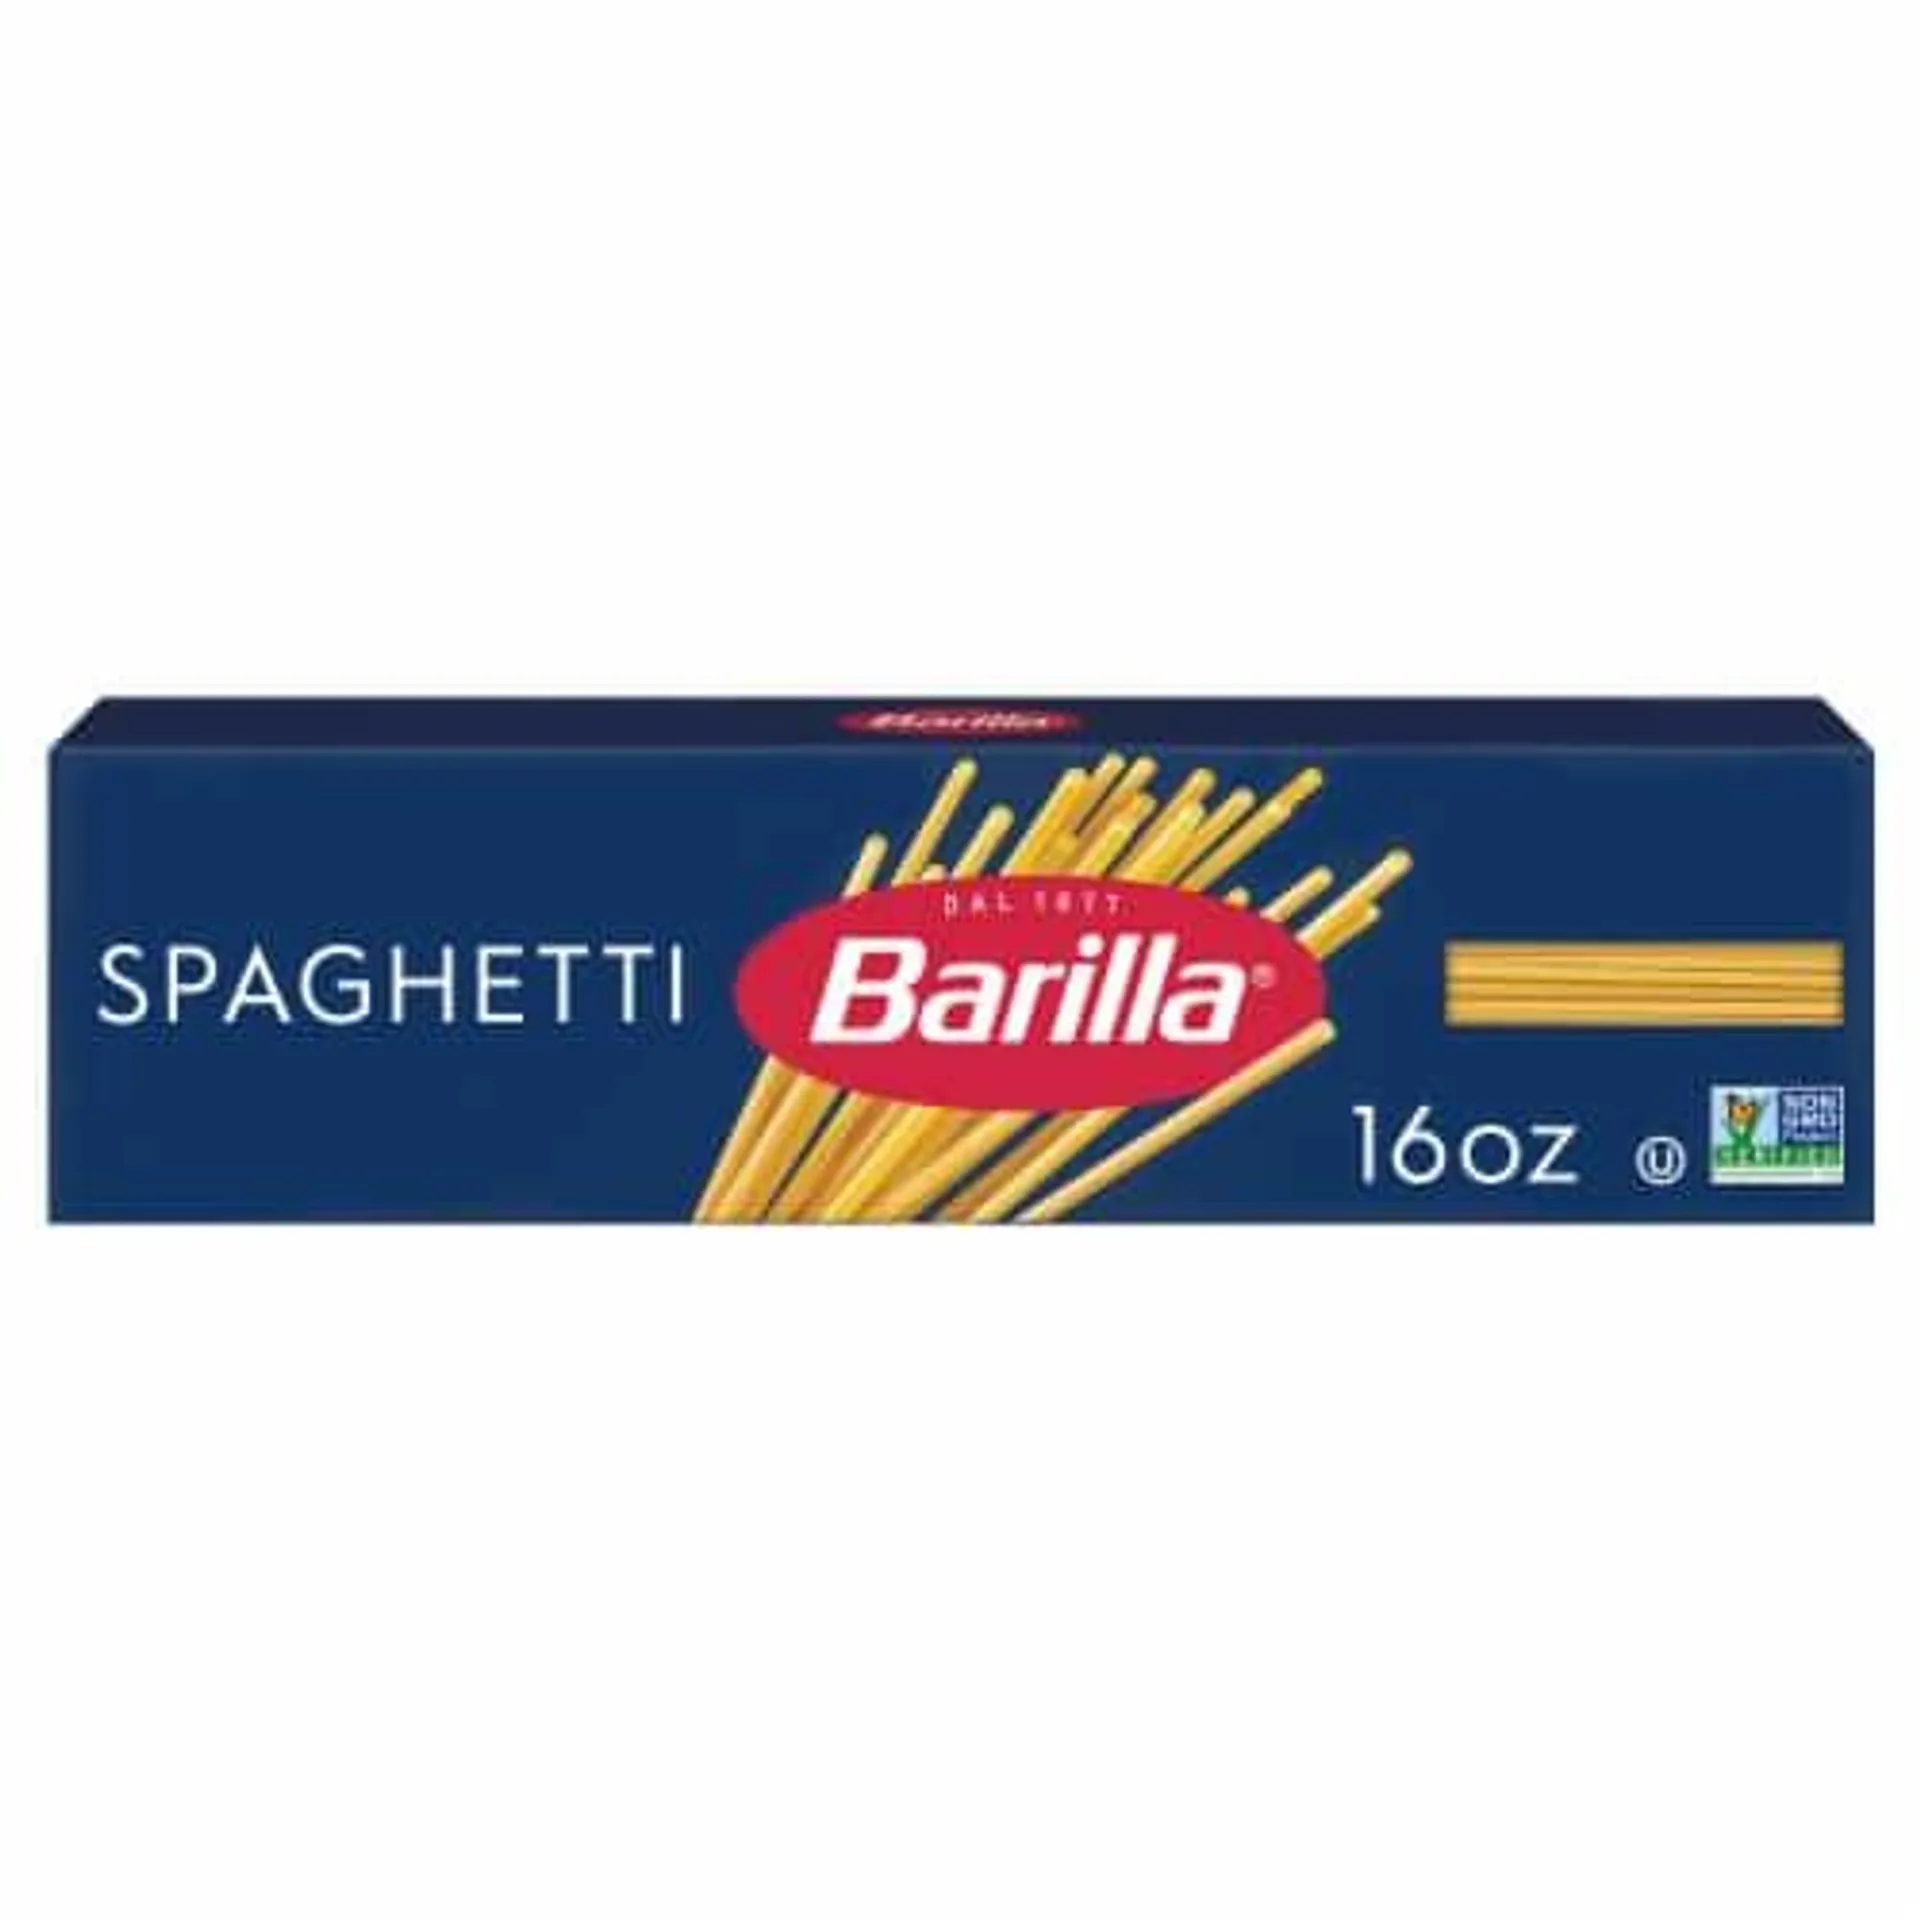 Barilla Spaghetti Pasta, Quality Non-GMO and Kosher Certified Pasta